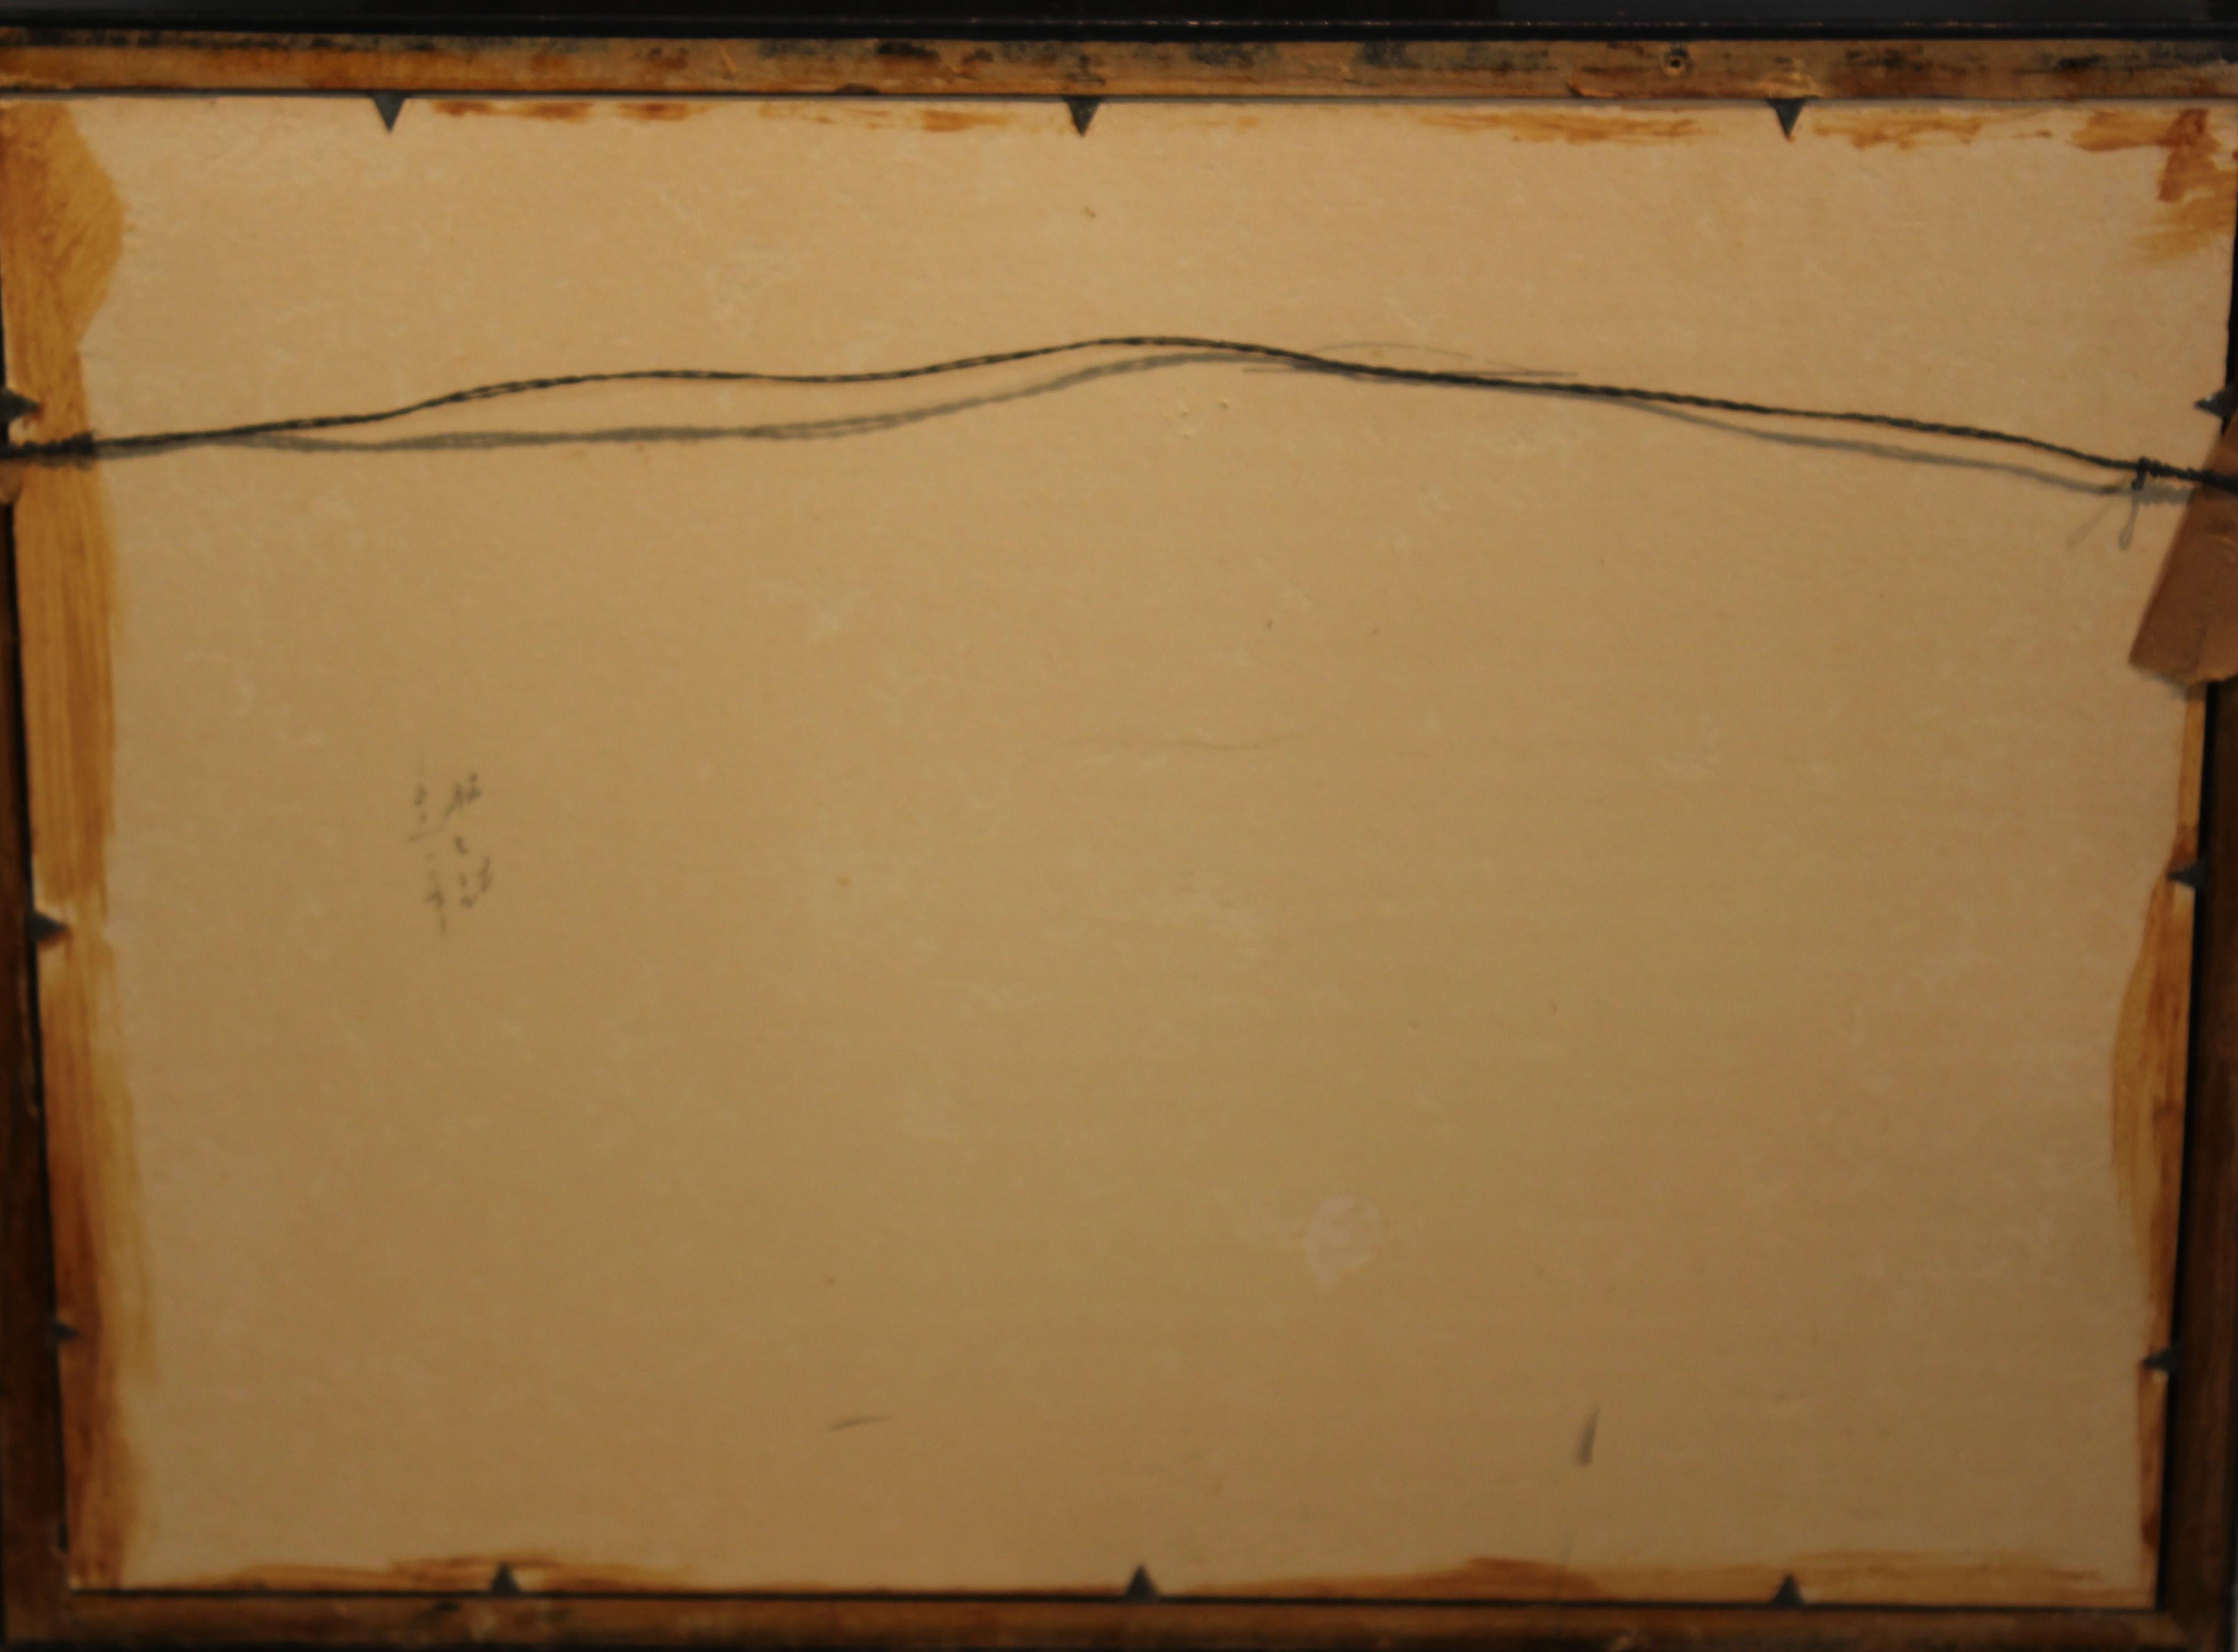 Dessin au graphite de mouettes perchées sur des rochers. L'œuvre est réalisée par l'artiste Stella Sullivan, de Houston, au Texas. Il est signé et daté par elle. L'œuvre est encadrée dans un cadre noir avec un passe-partout blanc.
Dimensions sans